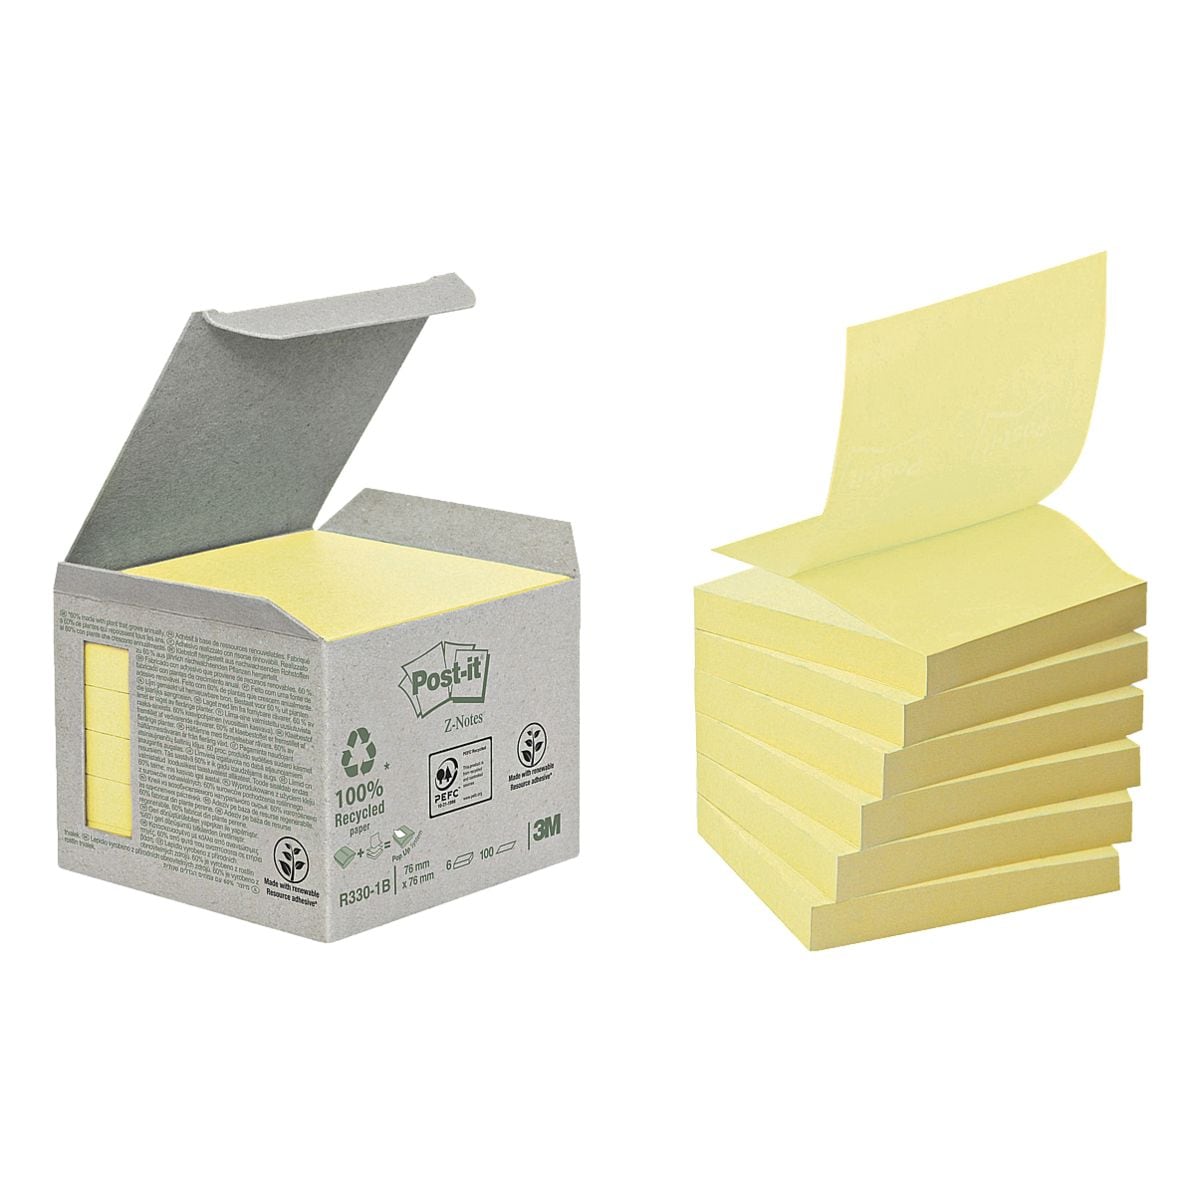 6x Post-it Notes (Recycle) bloc de notes repositionnables Recycling Z-Notes 7,6 x 7,6 cm, 600 feuilles au total, jaune